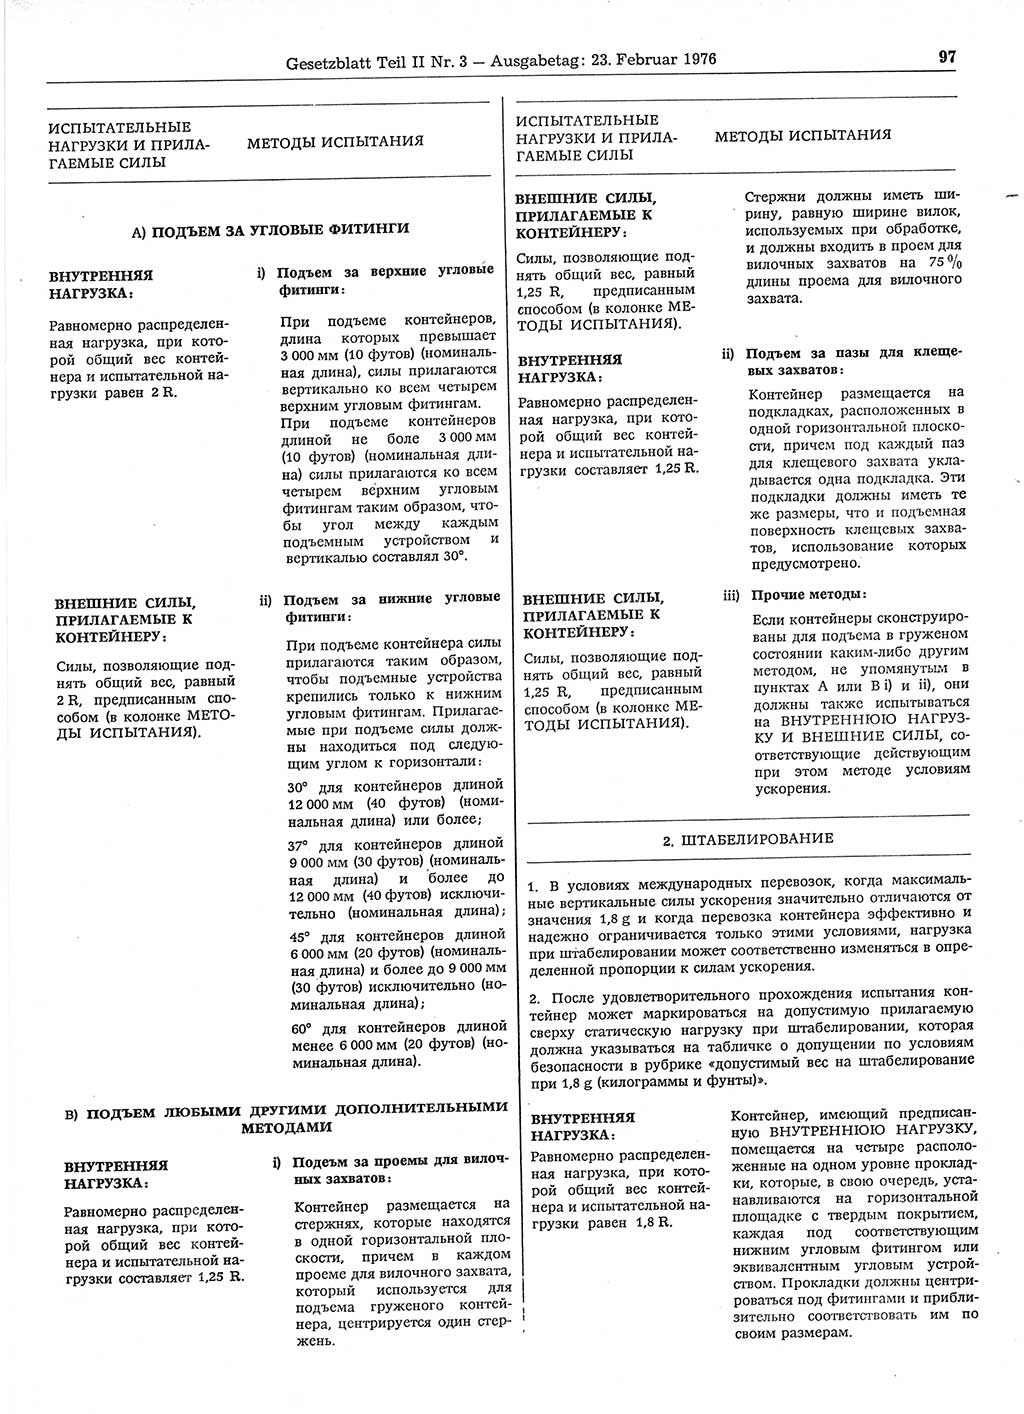 Gesetzblatt (GBl.) der Deutschen Demokratischen Republik (DDR) Teil ⅠⅠ 1976, Seite 97 (GBl. DDR ⅠⅠ 1976, S. 97)